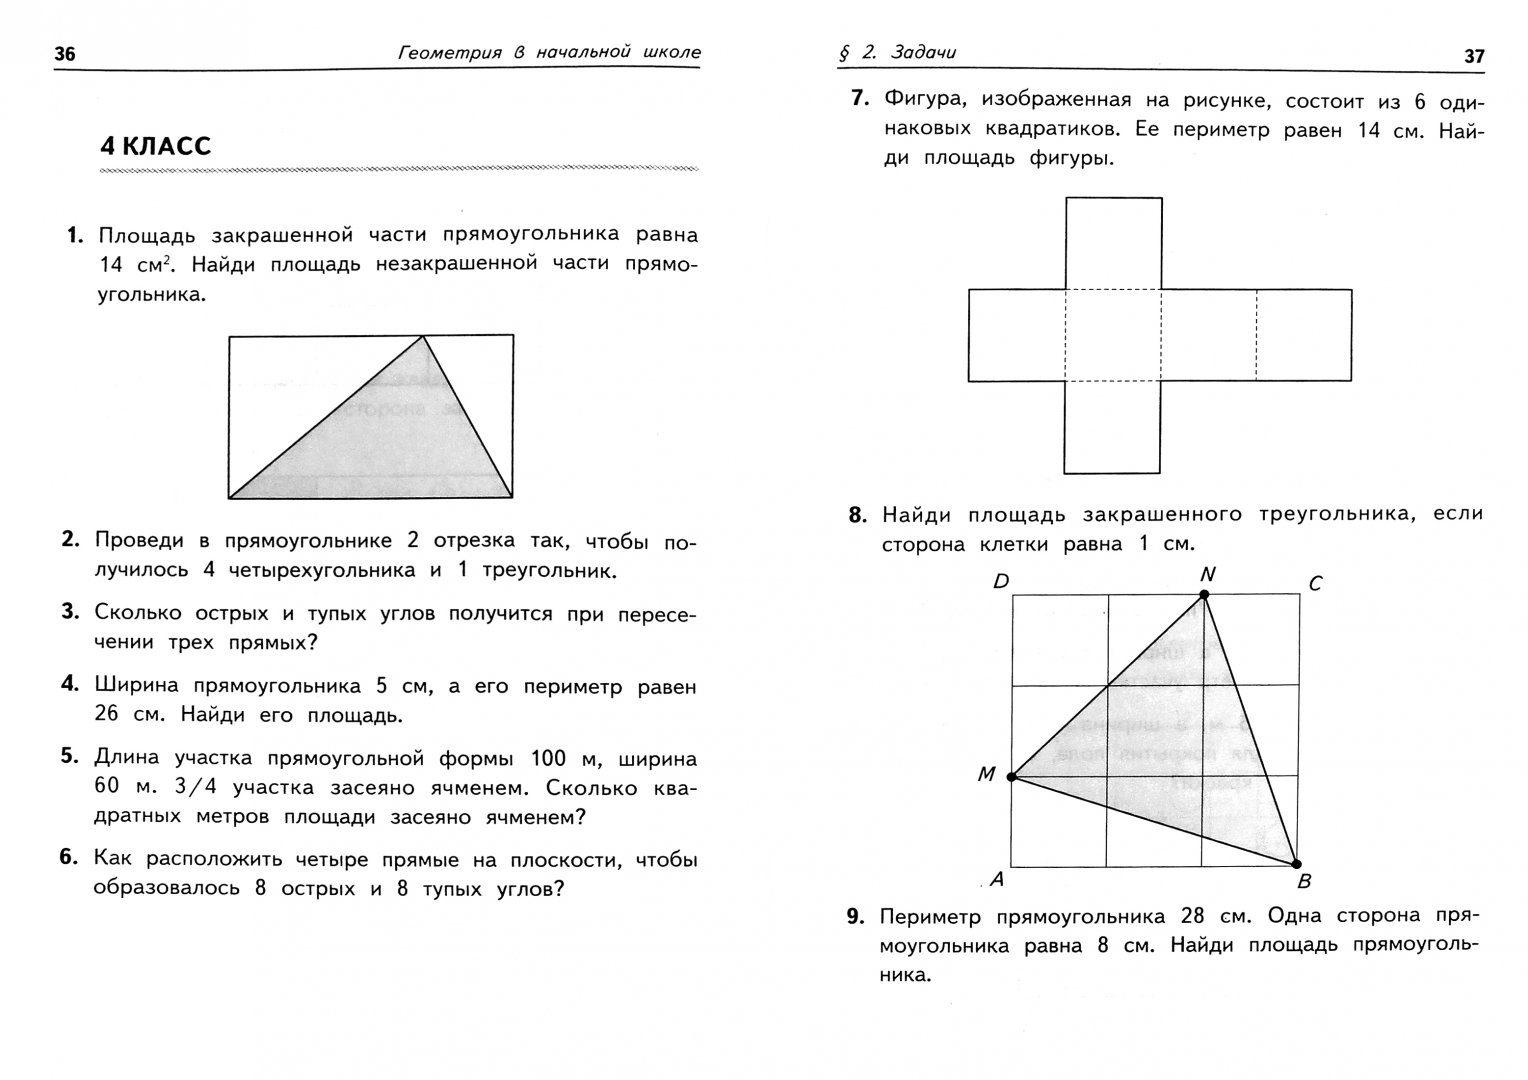 Иллюстрация 1 из 31 для Геометрия в начальной школе - Эдуард Балаян | Лабиринт - книги. Источник: Лабиринт